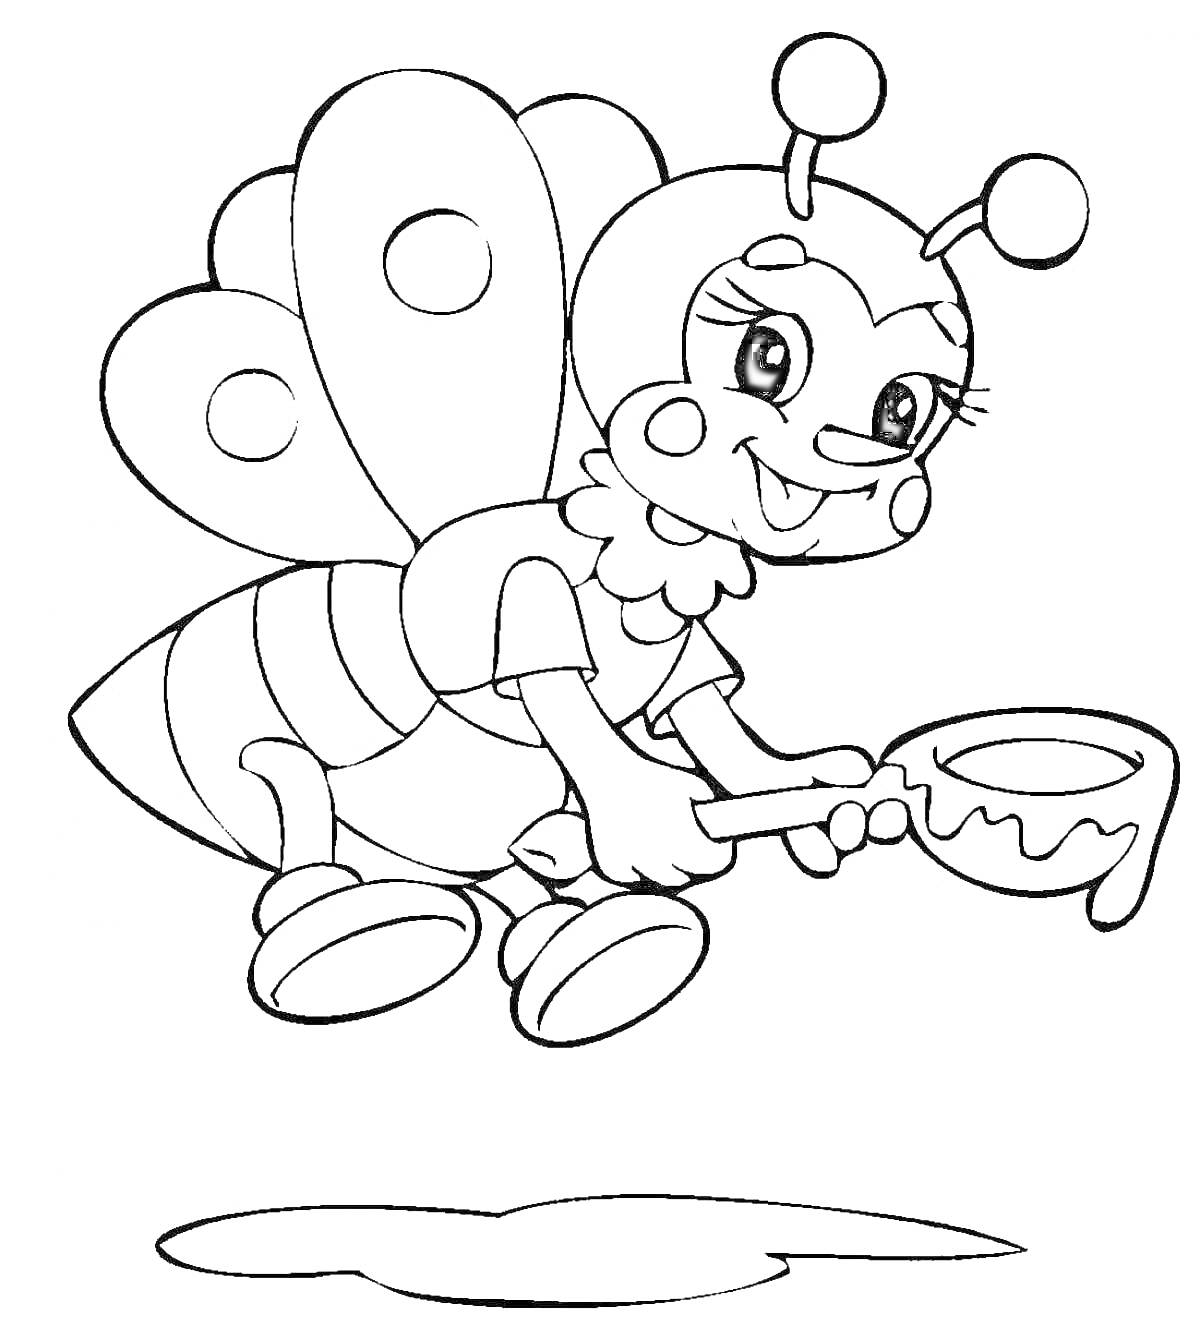 Раскраска Пчелка с крылышками и баночкой меда